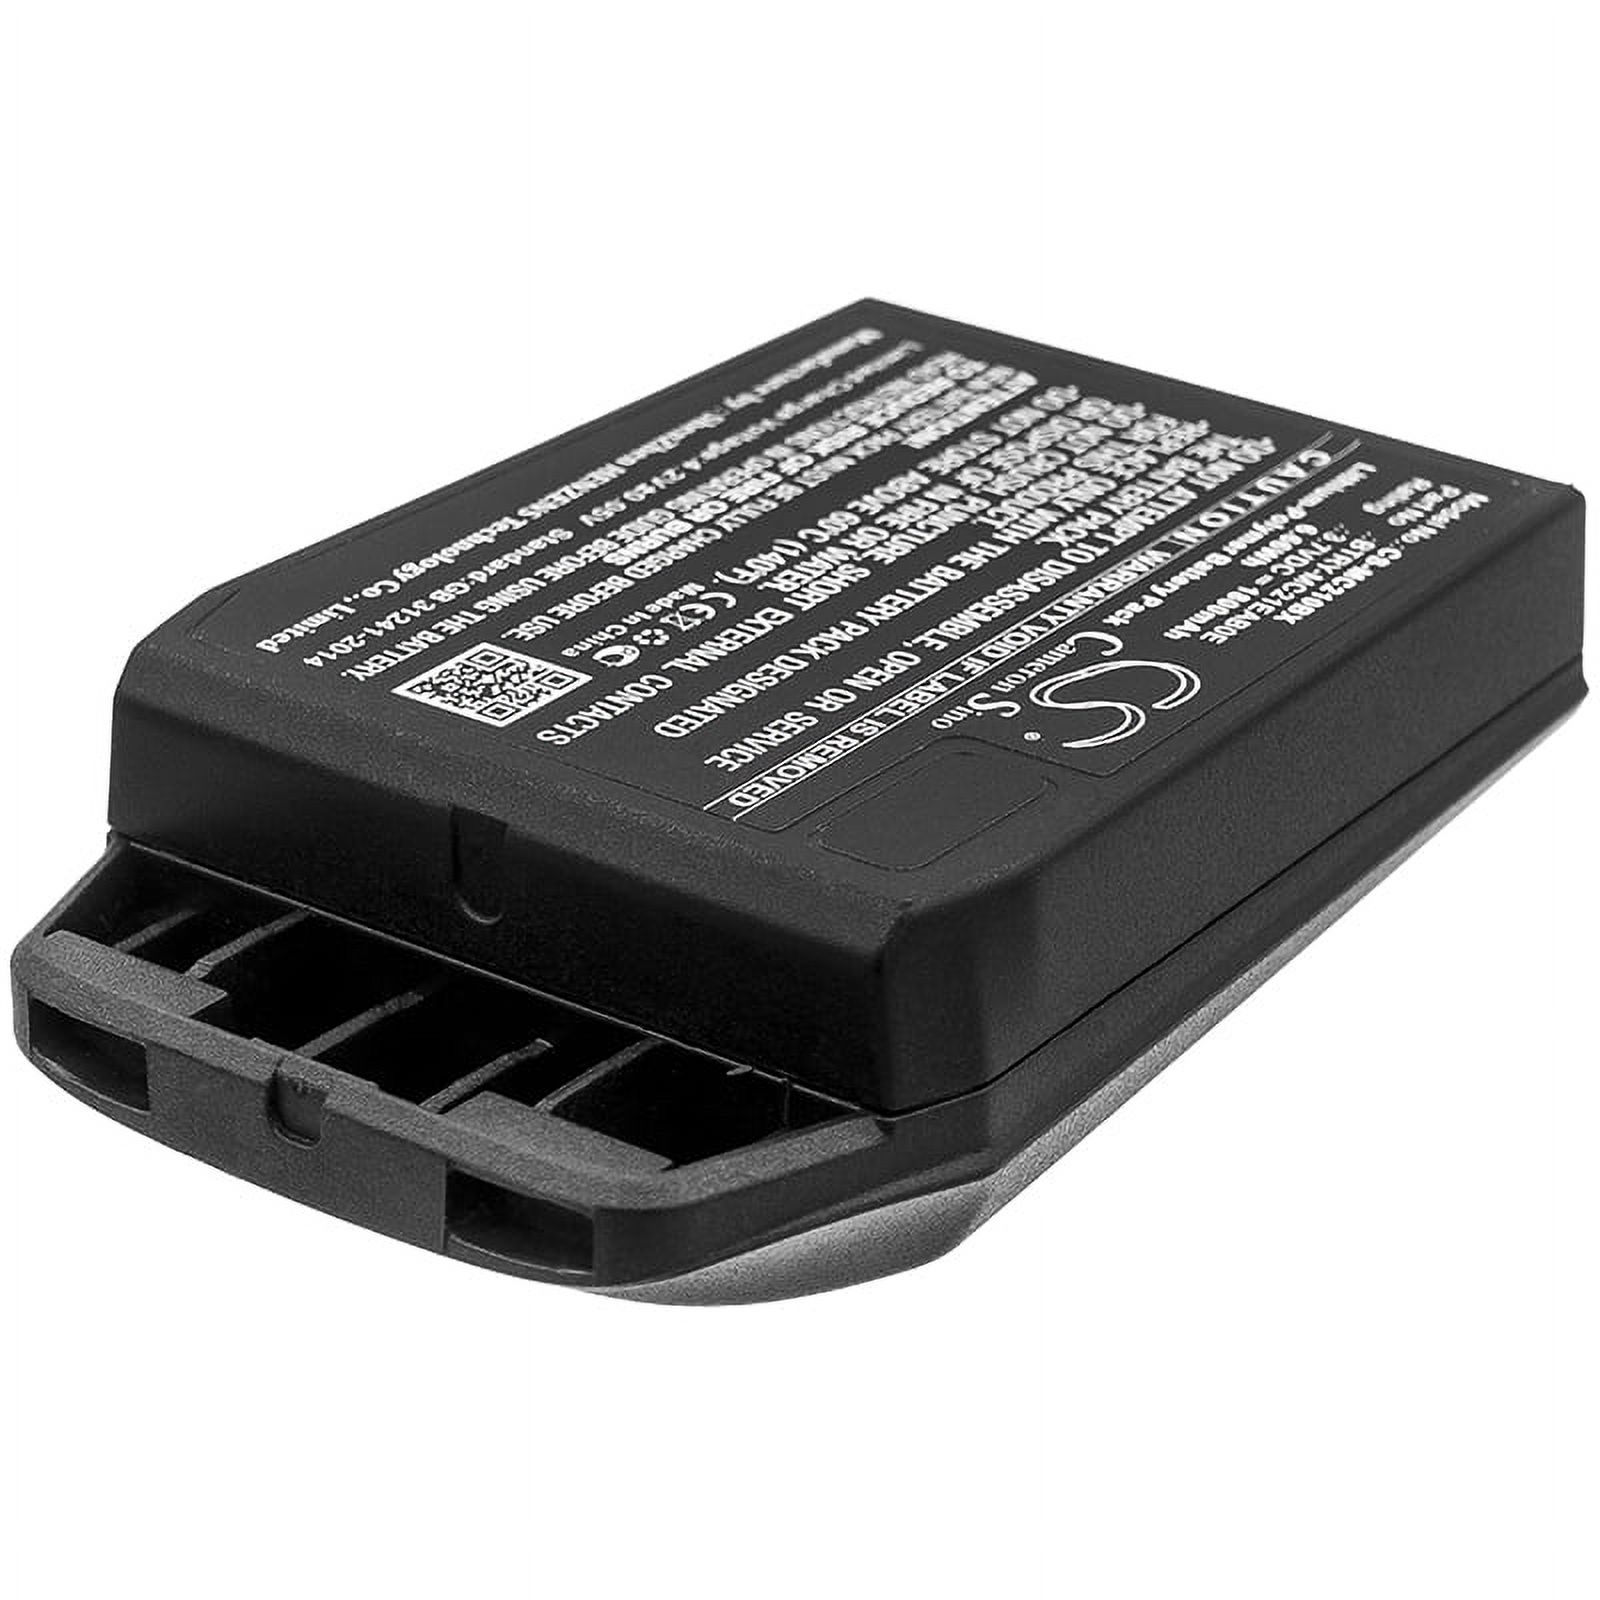 Battery for Motorola MC2100 MC2180 MC21 82-150612-01 82-105612-01 1800mAh - image 2 of 3